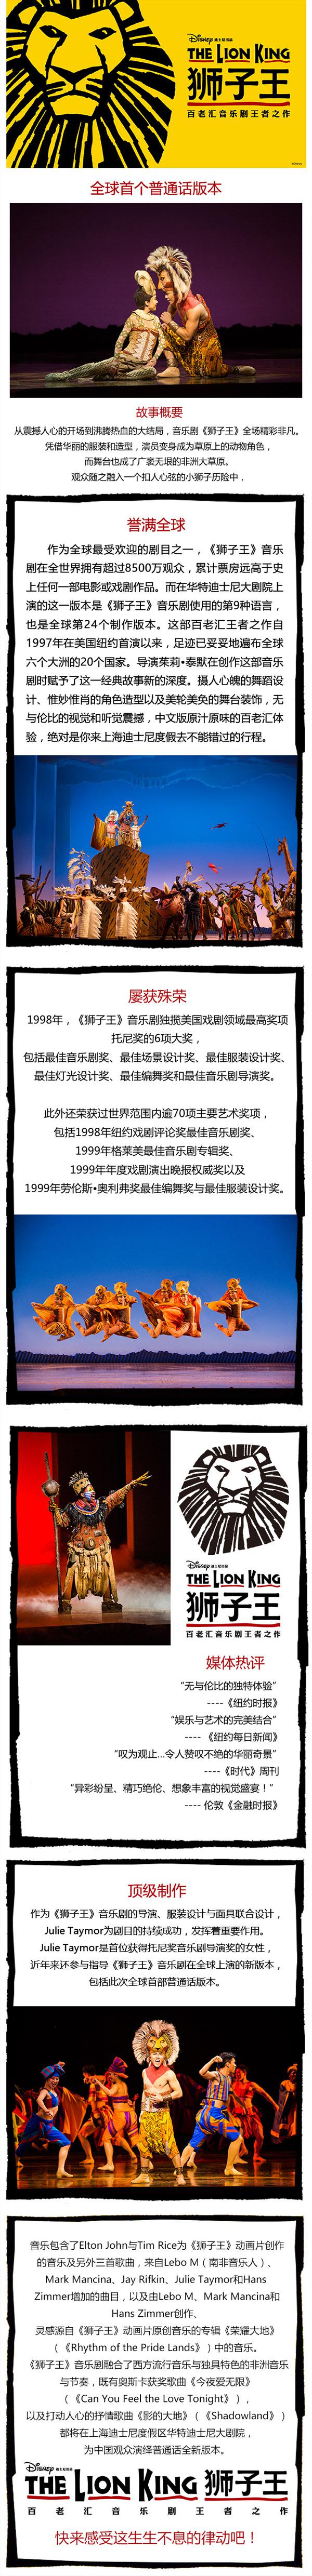  百老汇音乐剧王者之作《狮子王》中文版   上海站